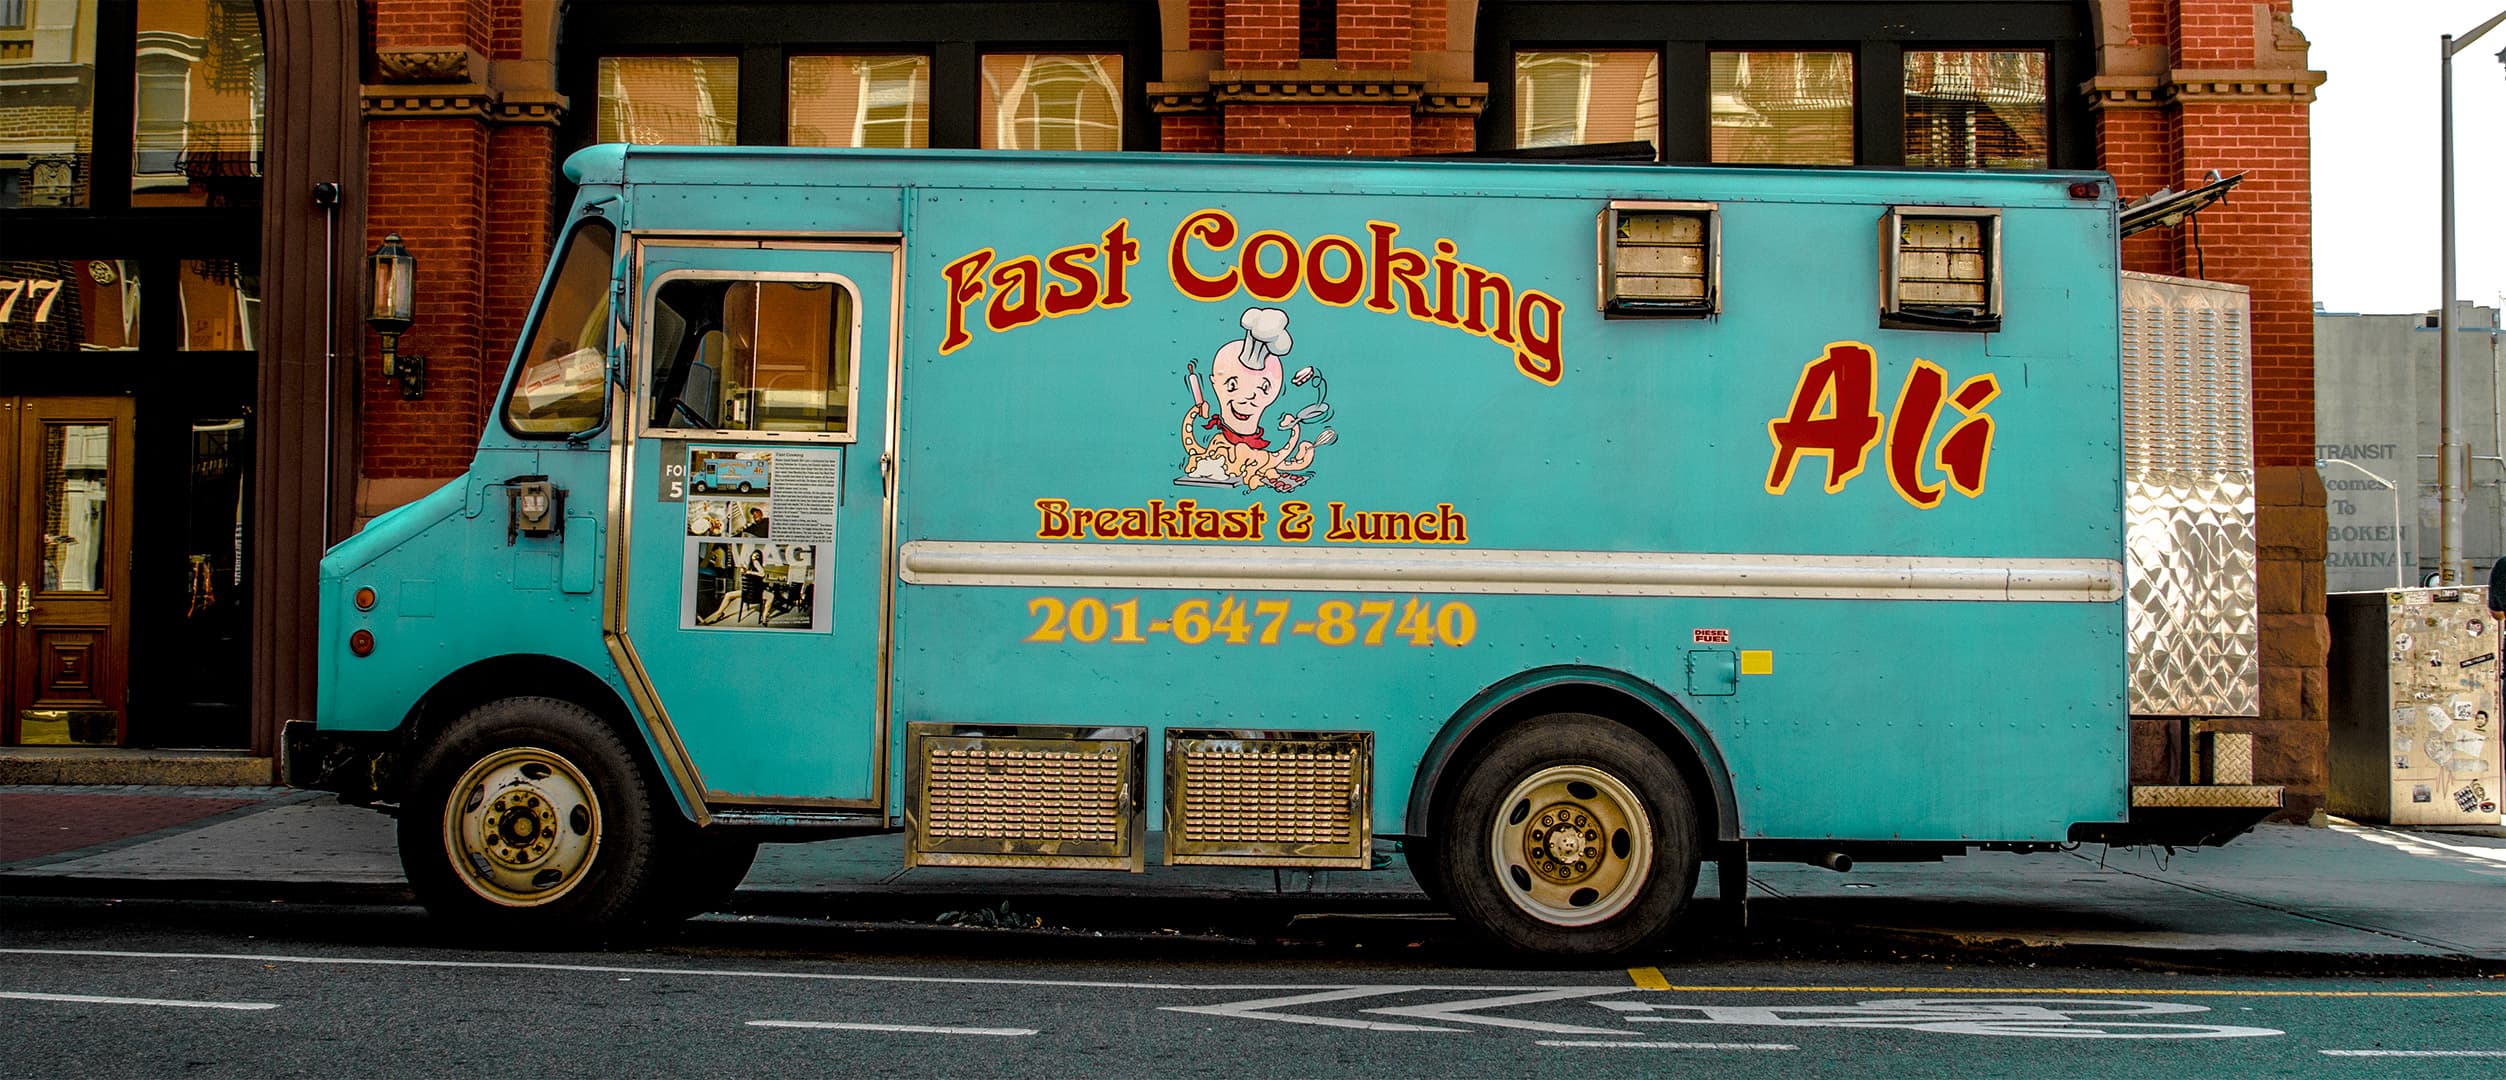 Food Truck, Hoboken, New Jersey (2016)